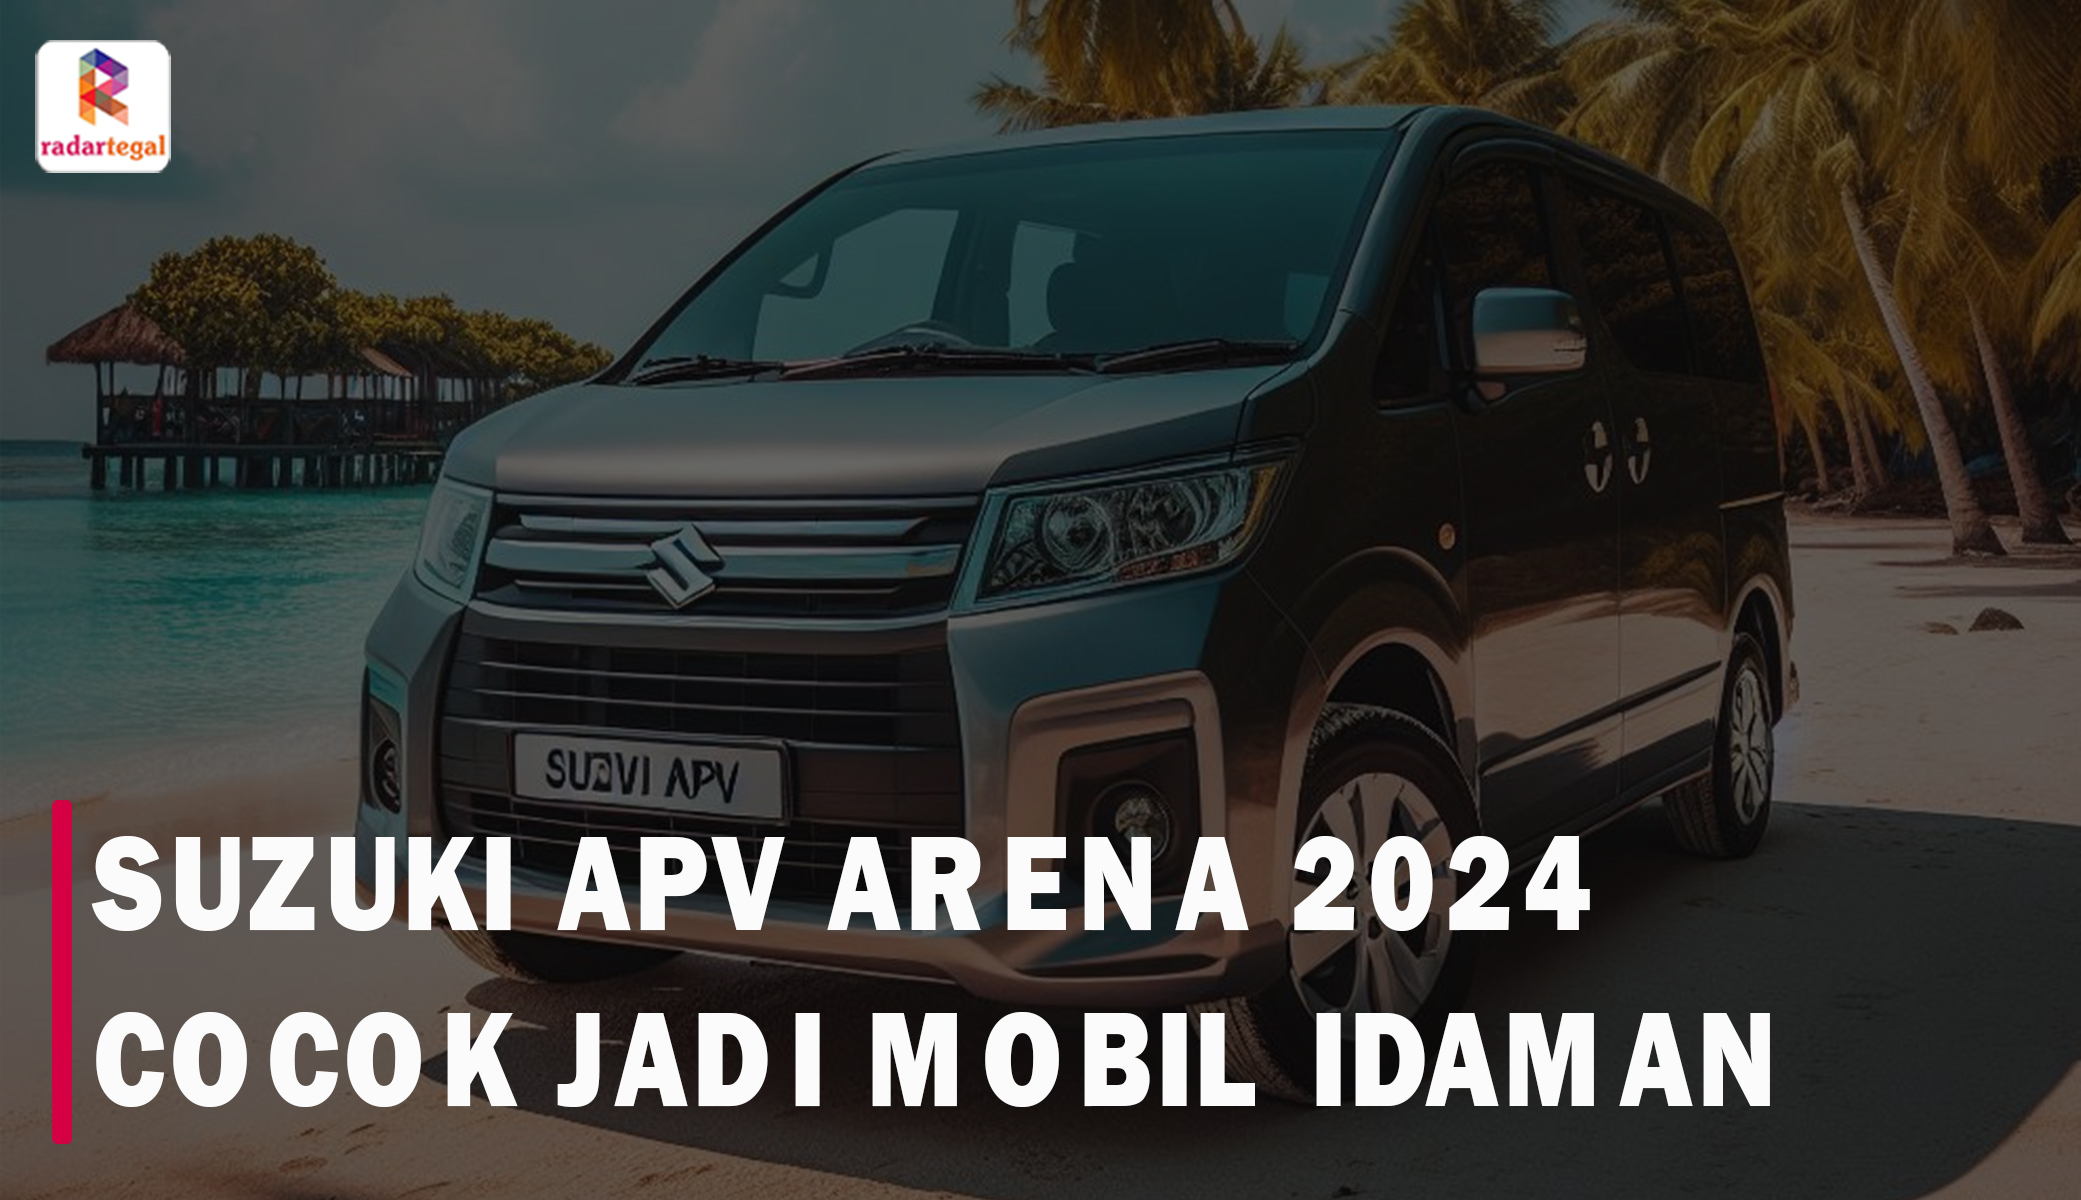 Pantas Jadi Mobil Idaman, Ternyata Suzuki APV Arena 2024 Unggul di Berbagai Aspek